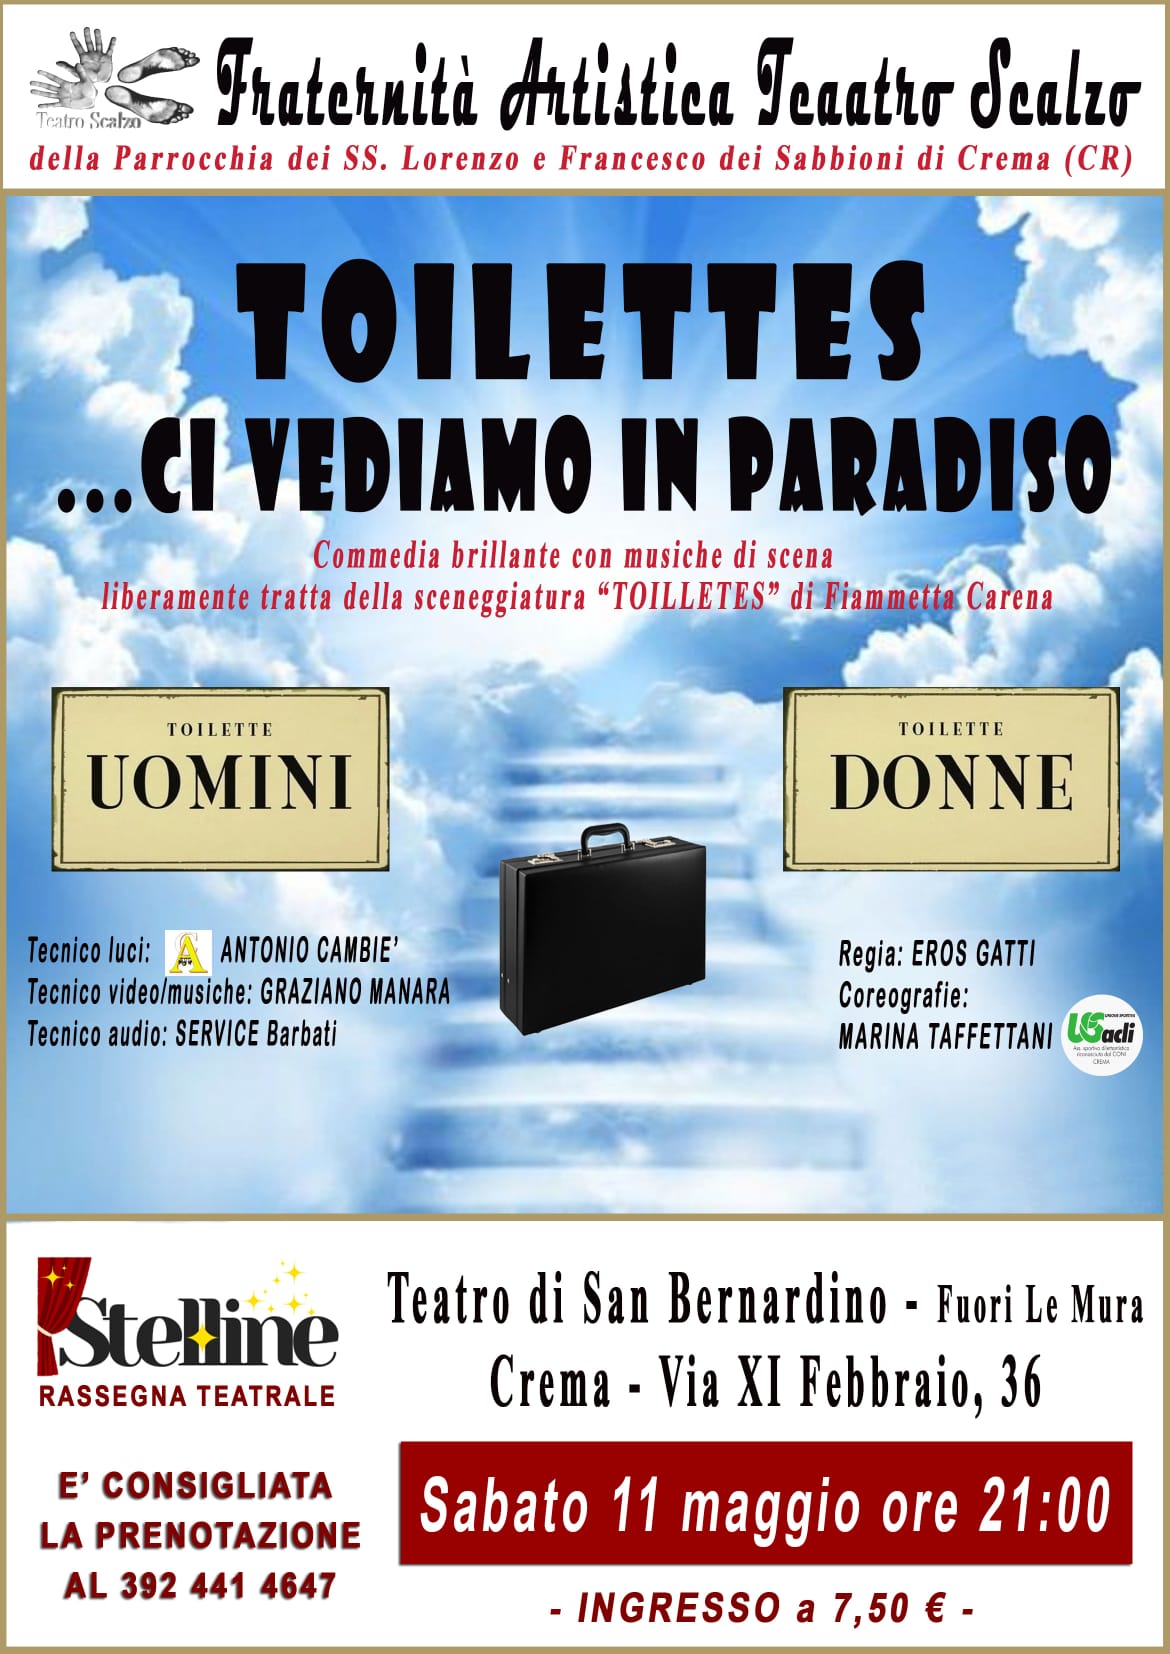 Stelline, la compagnia Sabbioni Fraternità artistica teatro scalzo mette in scena Toilette